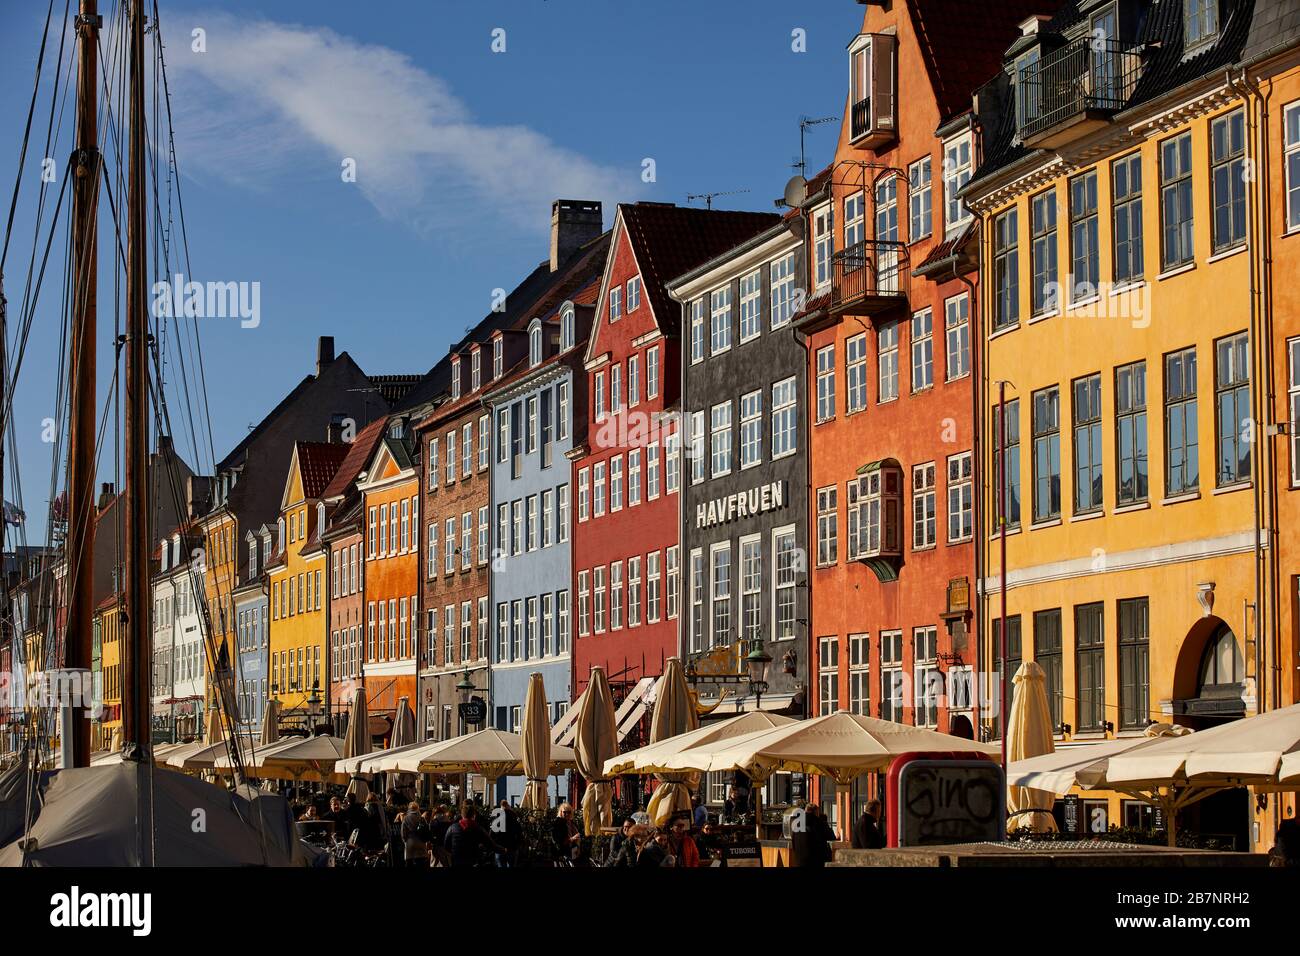 Copenhague, la capitale danoise, le front de mer historique de Nyhavn, le canal et le quartier des divertissements bordés de maisons de ville aux couleurs vives du XVIIe et du XVIIIe siècle Banque D'Images